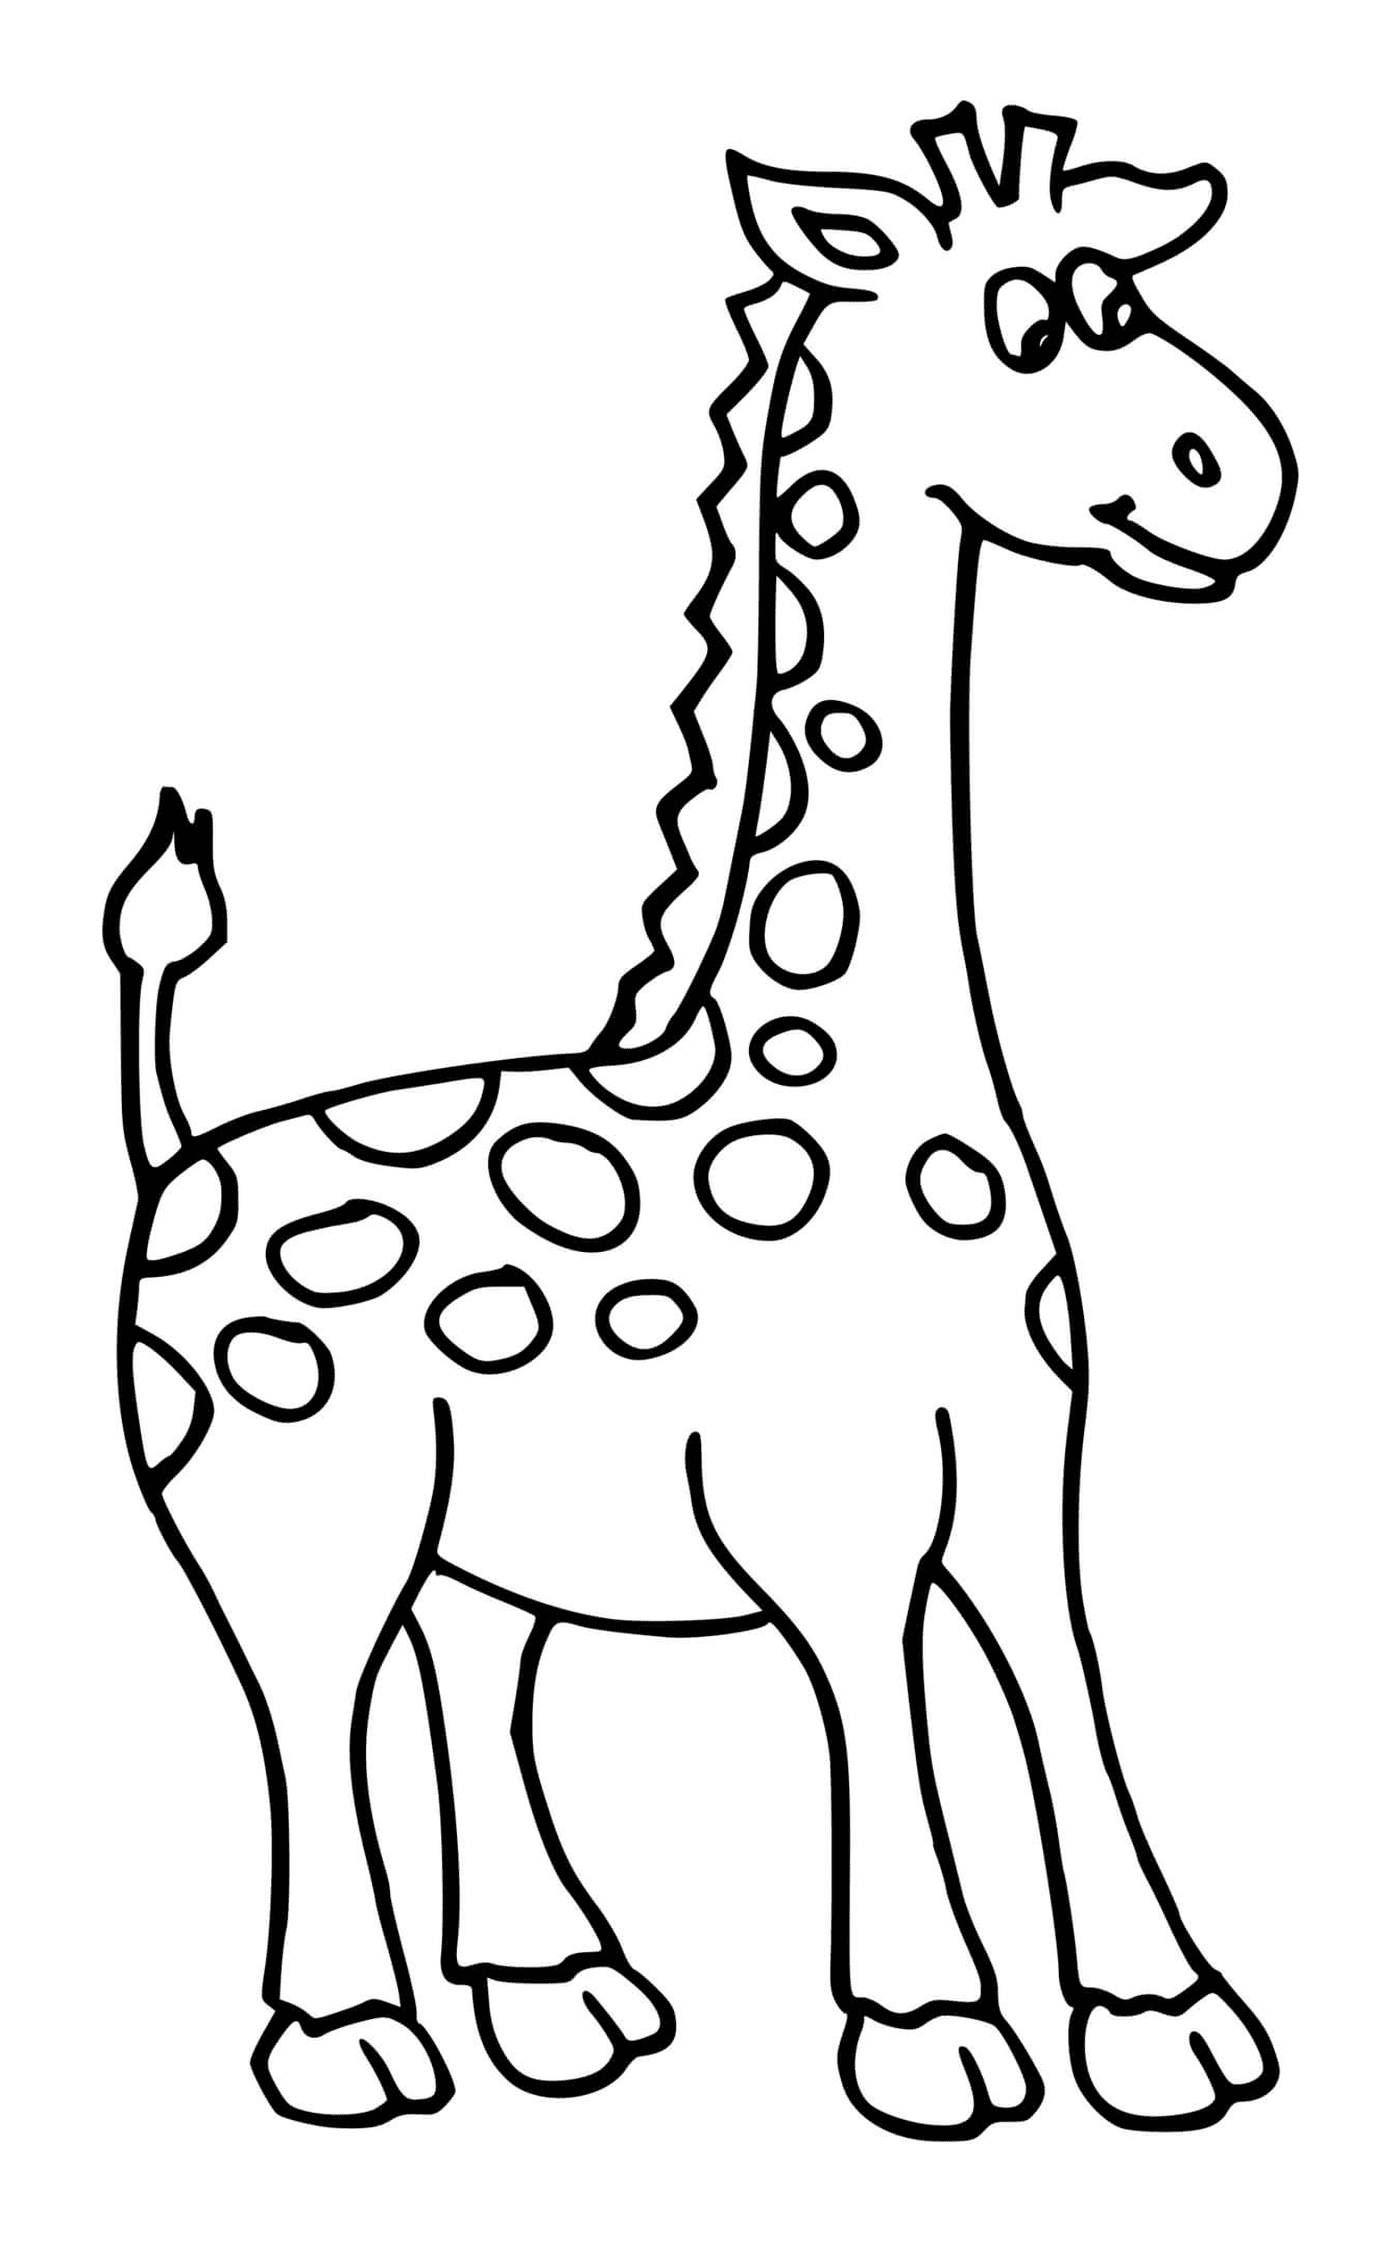  Pequeña jirafa 